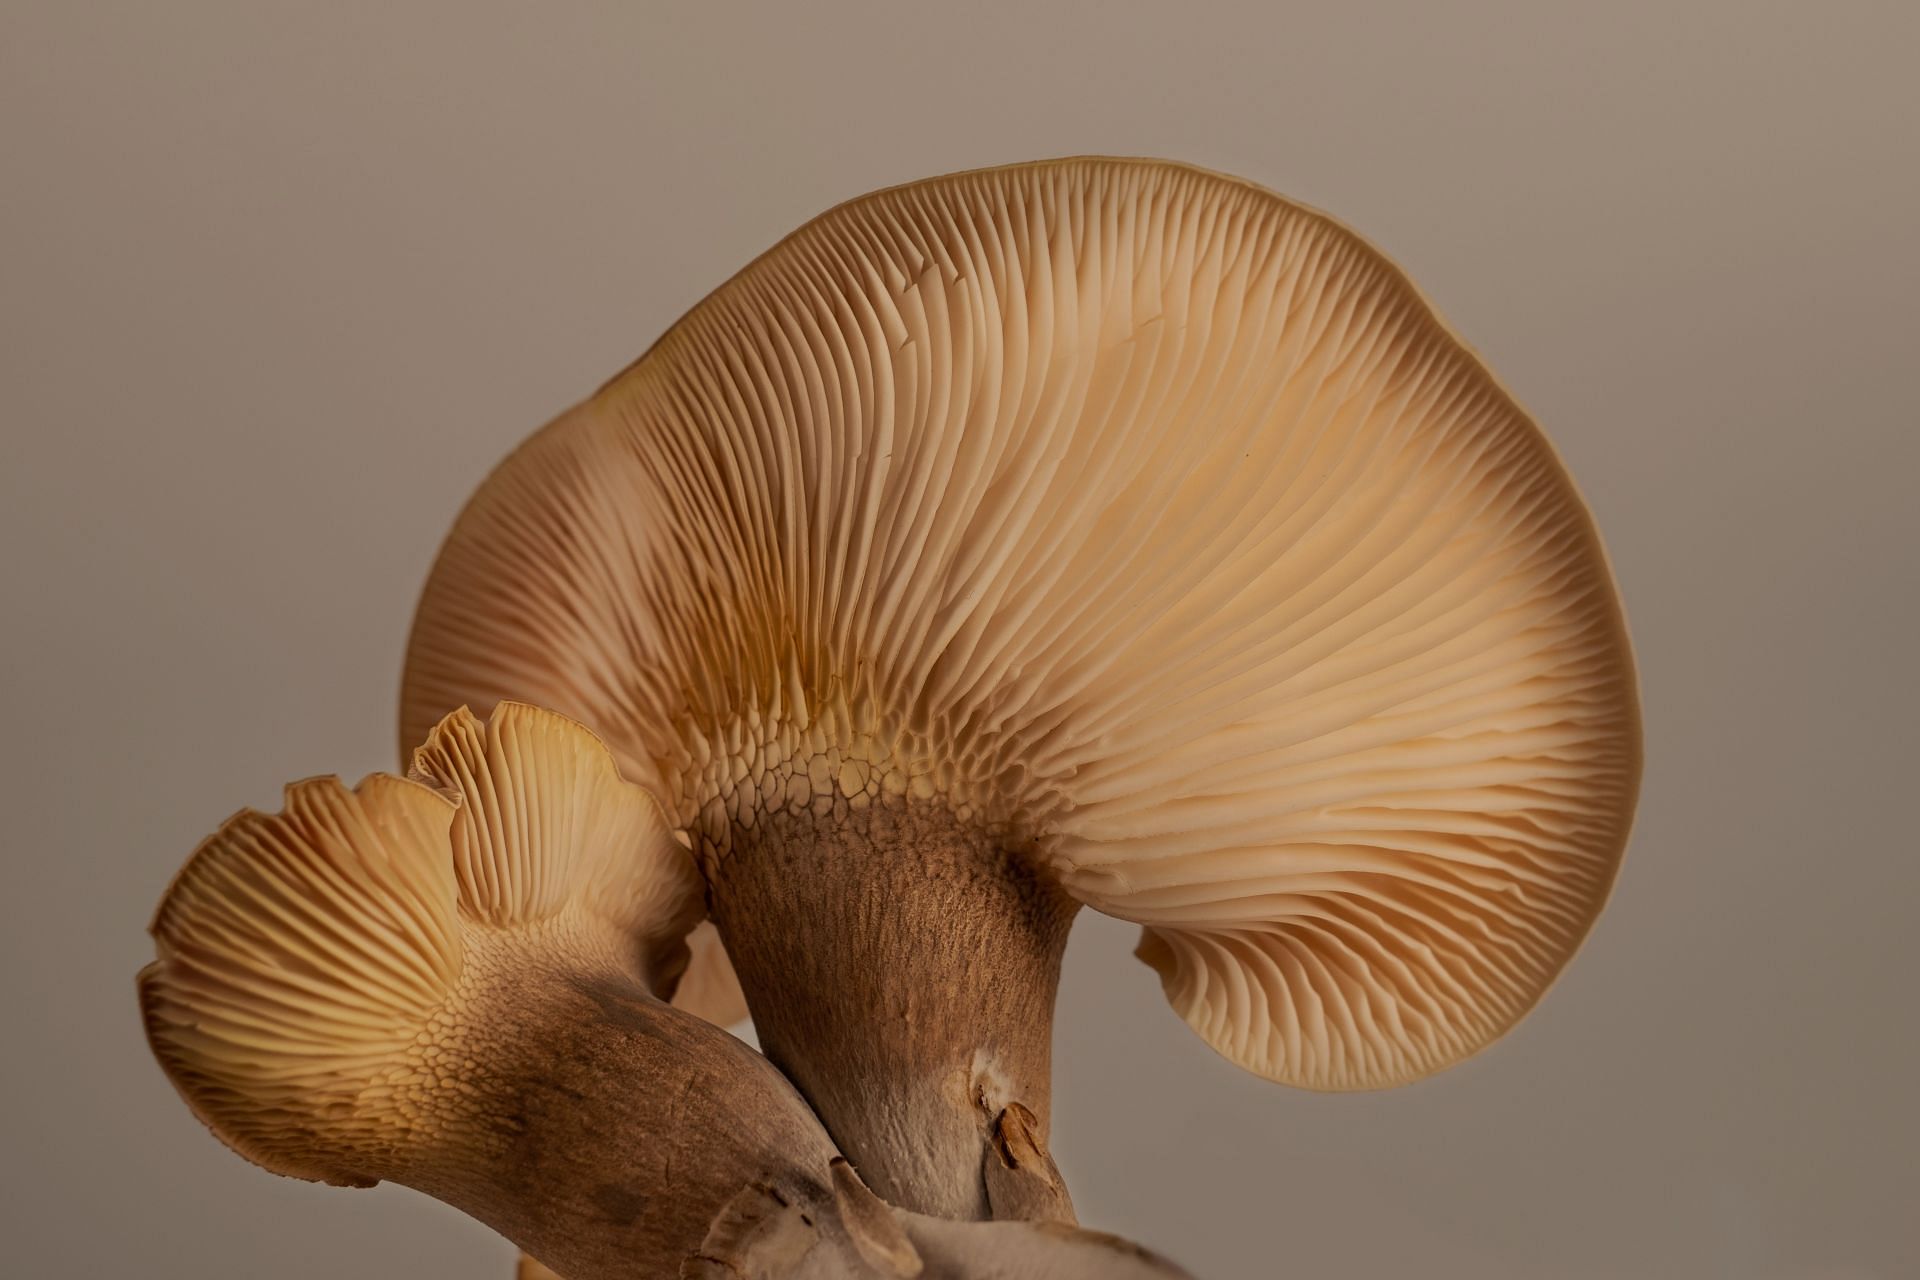 Types of mushrooms (Image via Unsplash/An Vision)